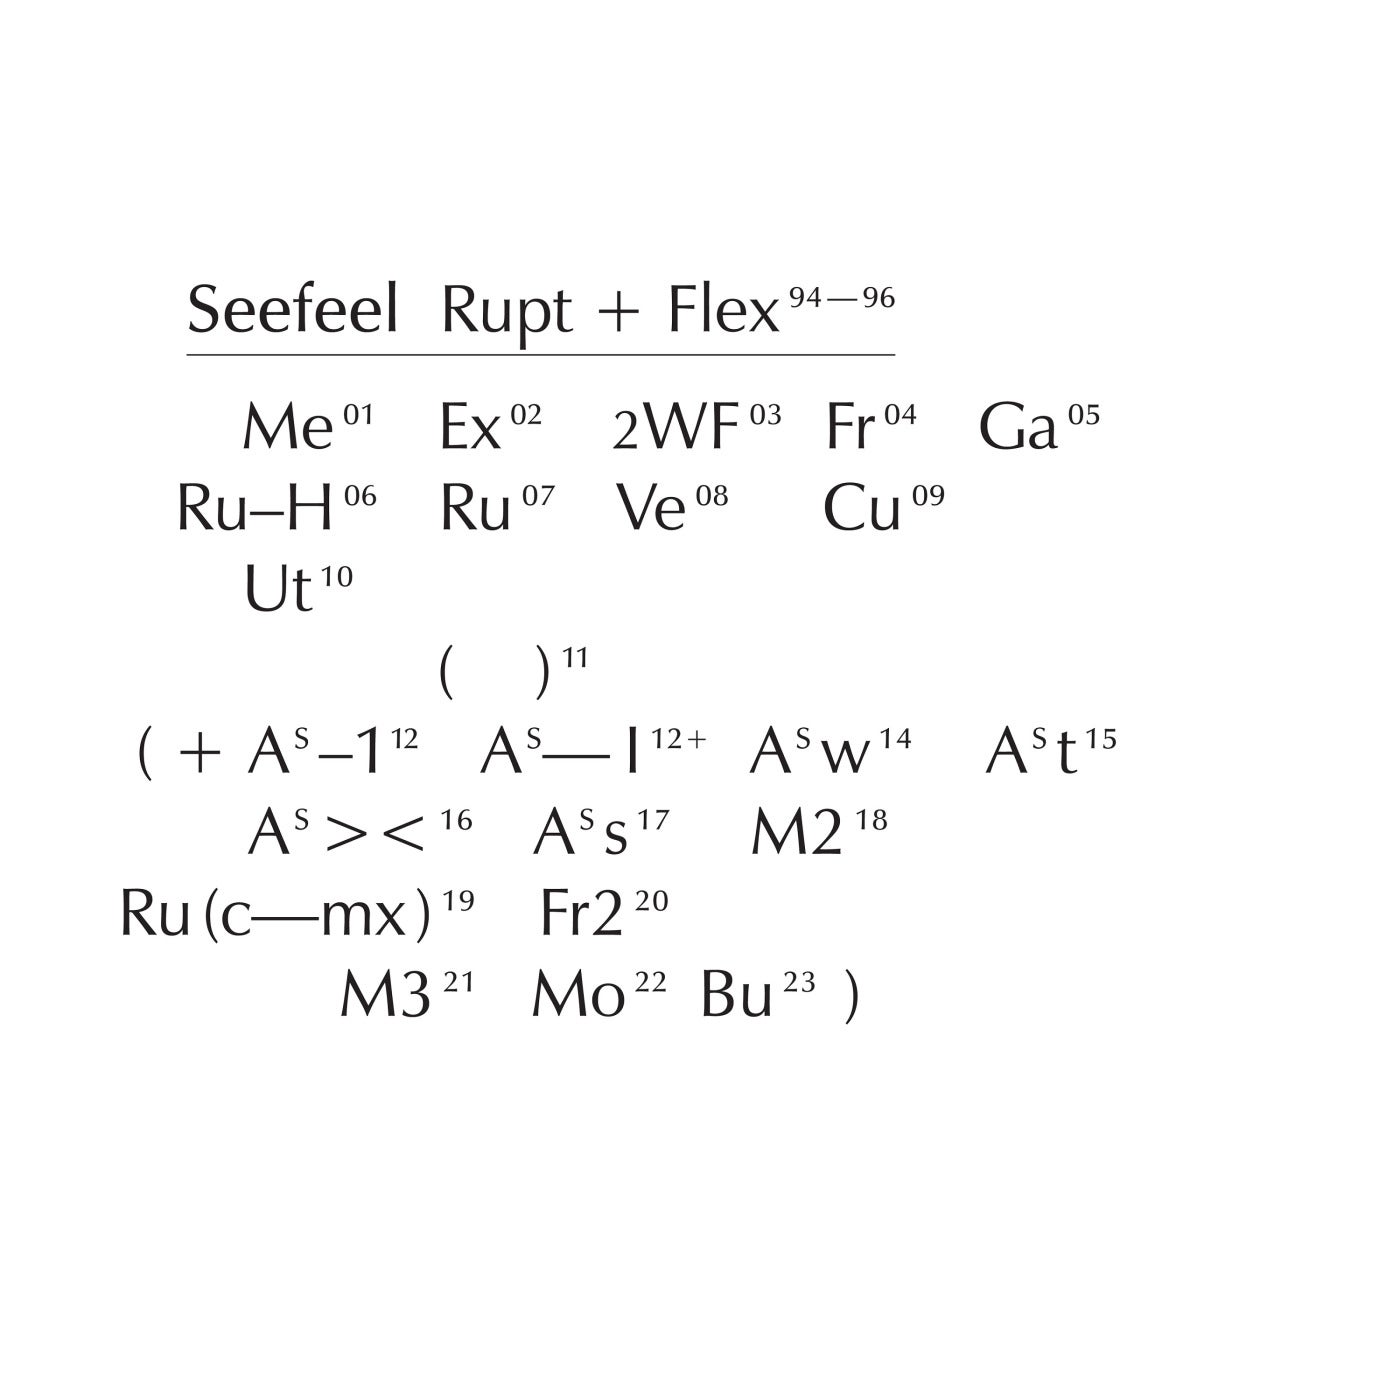 Rupt and Flex (1994 - 96)